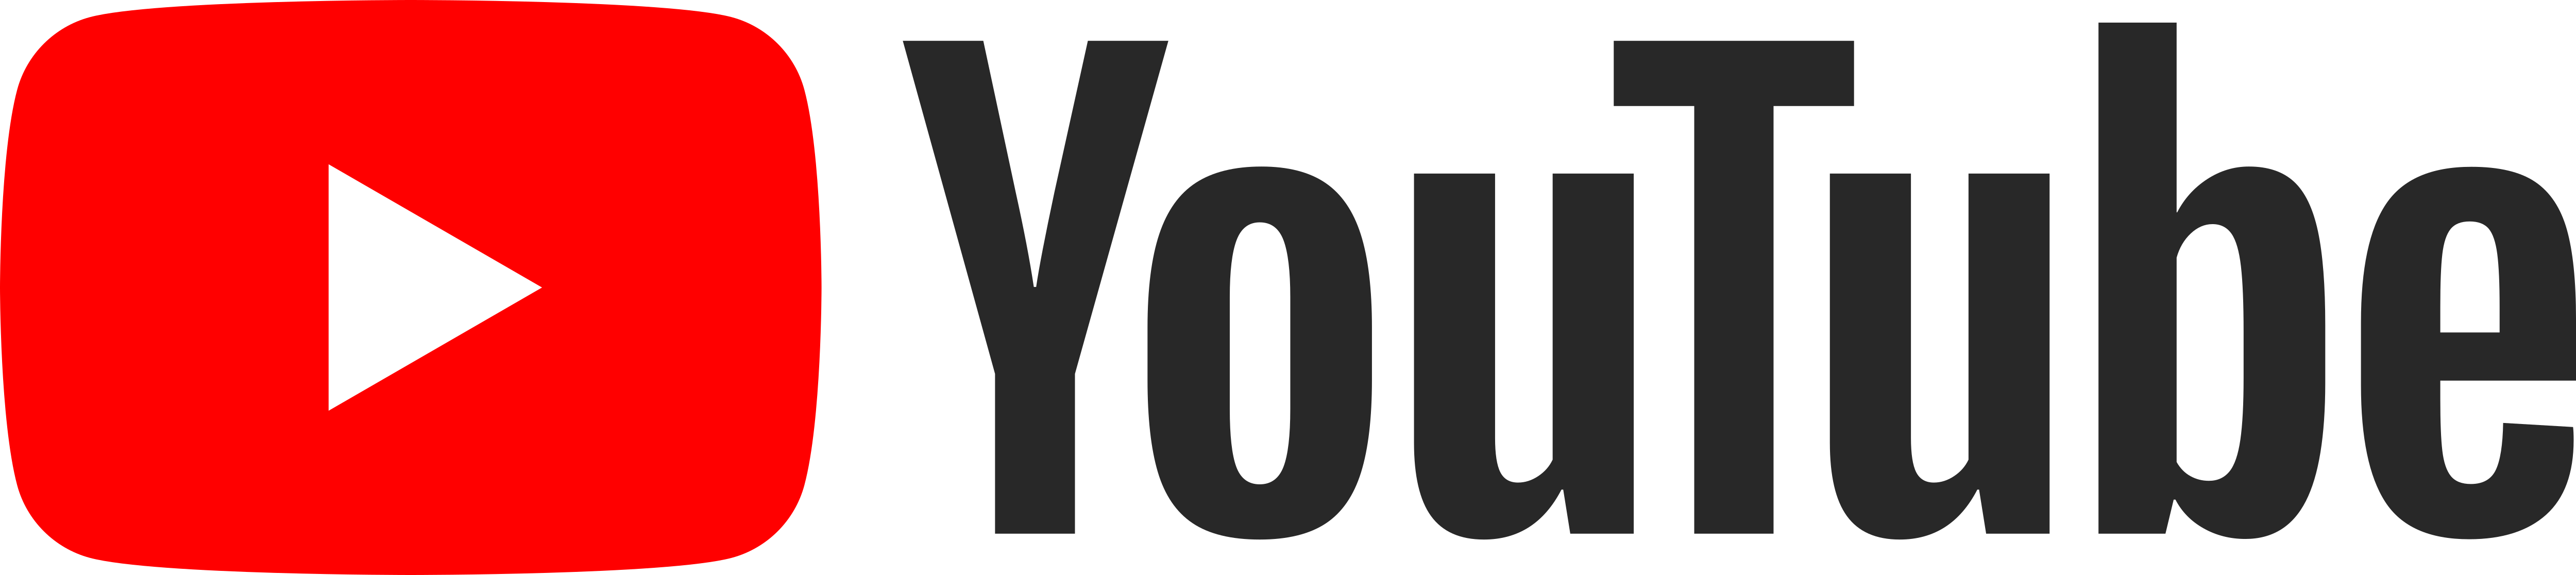 YouTube - Logos Download